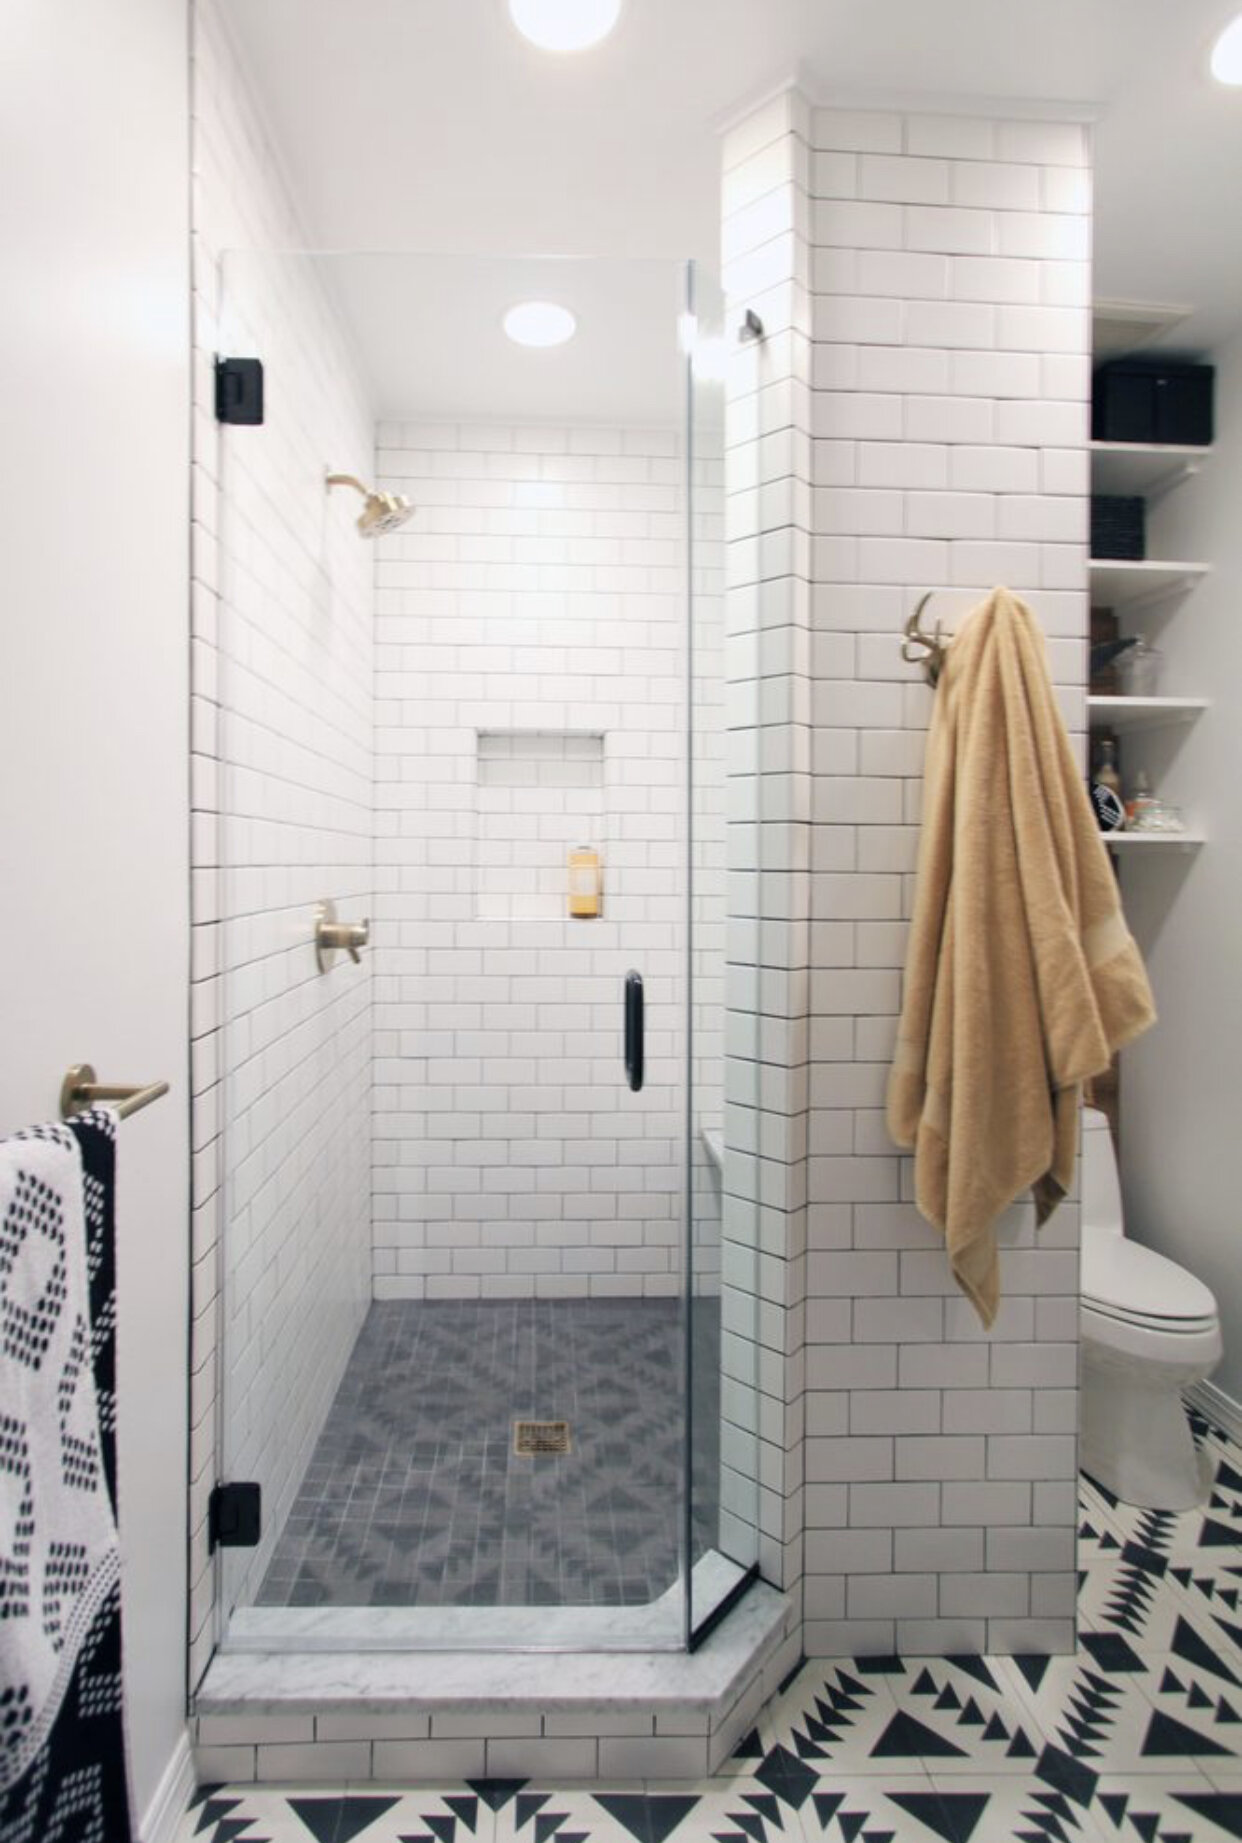 Deerfield Bathroom Remodel Patterned Tile Lotus Home Improvement.jpeg